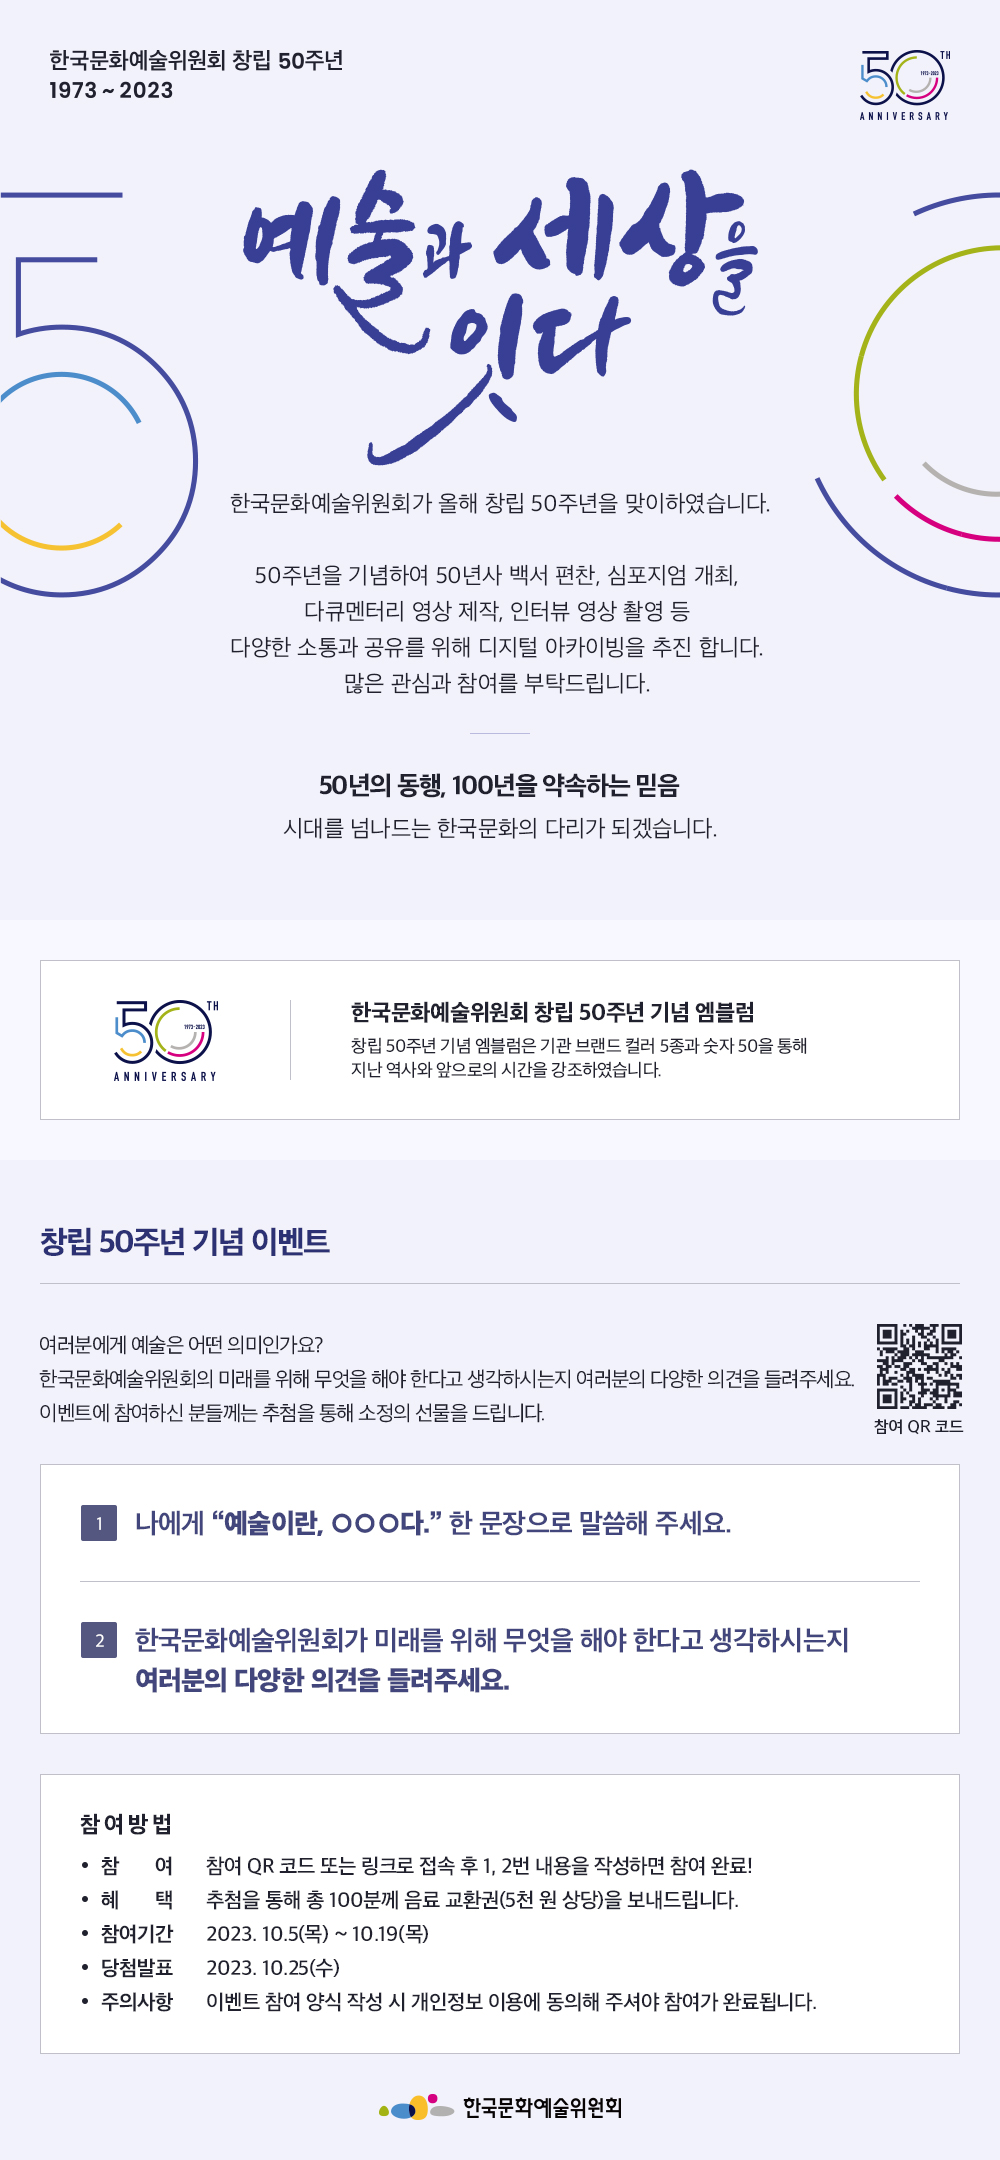  한국문화예술위원회 창립 50주년 기념 이벤트 (~10/19)